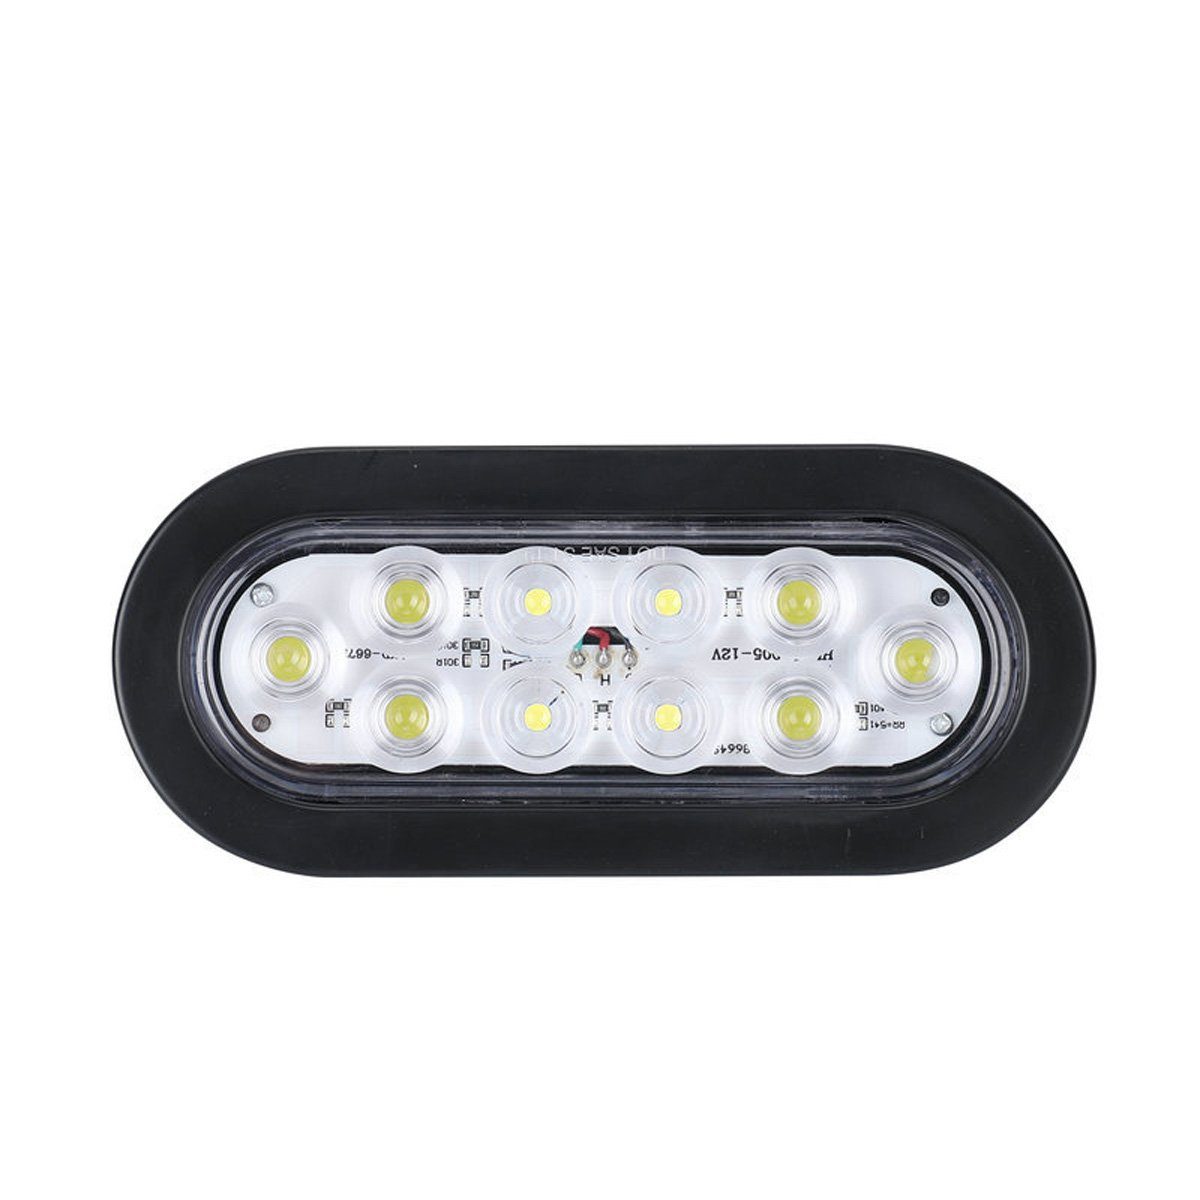 Anhänger Rückleuchten LED Blinker Bremslicht Schlusslicht  Kennzeichenbeleuchtung, 13,90 €